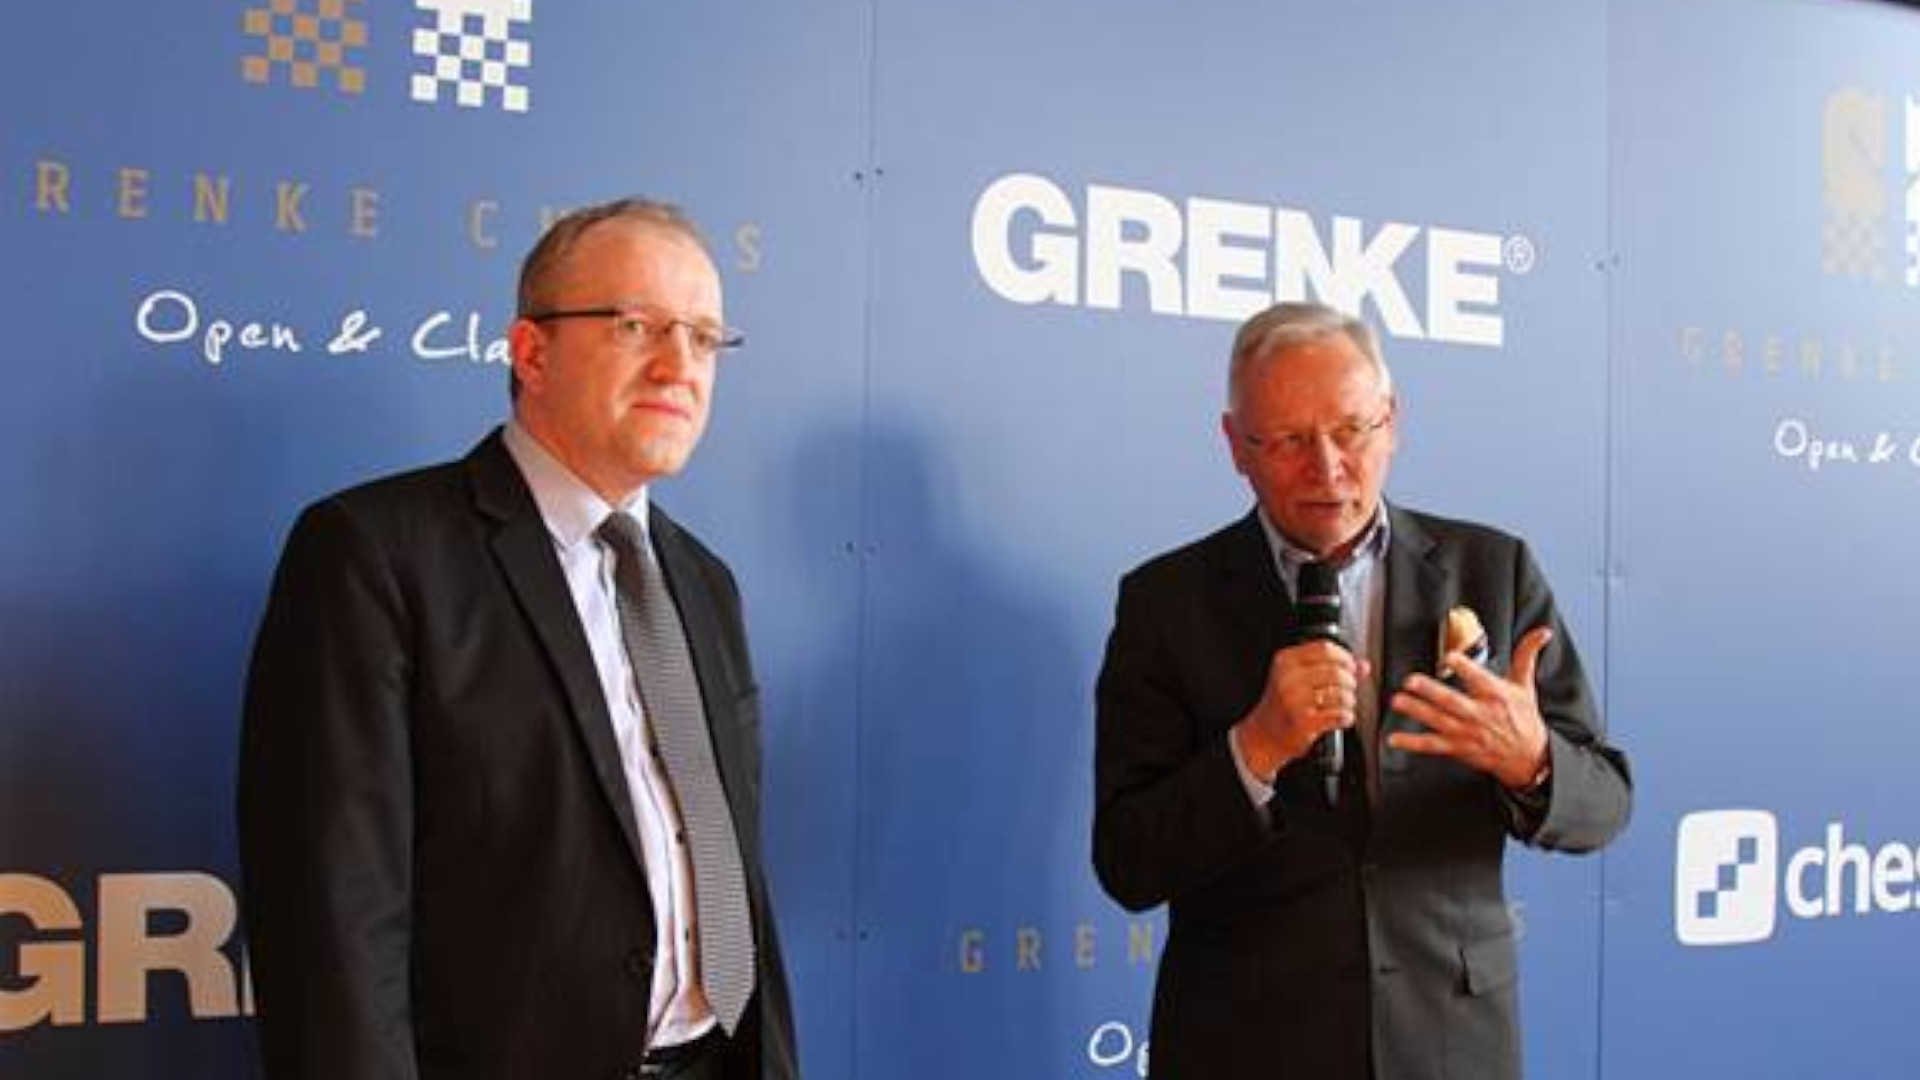 GRENKE – ein kluger Schachzug